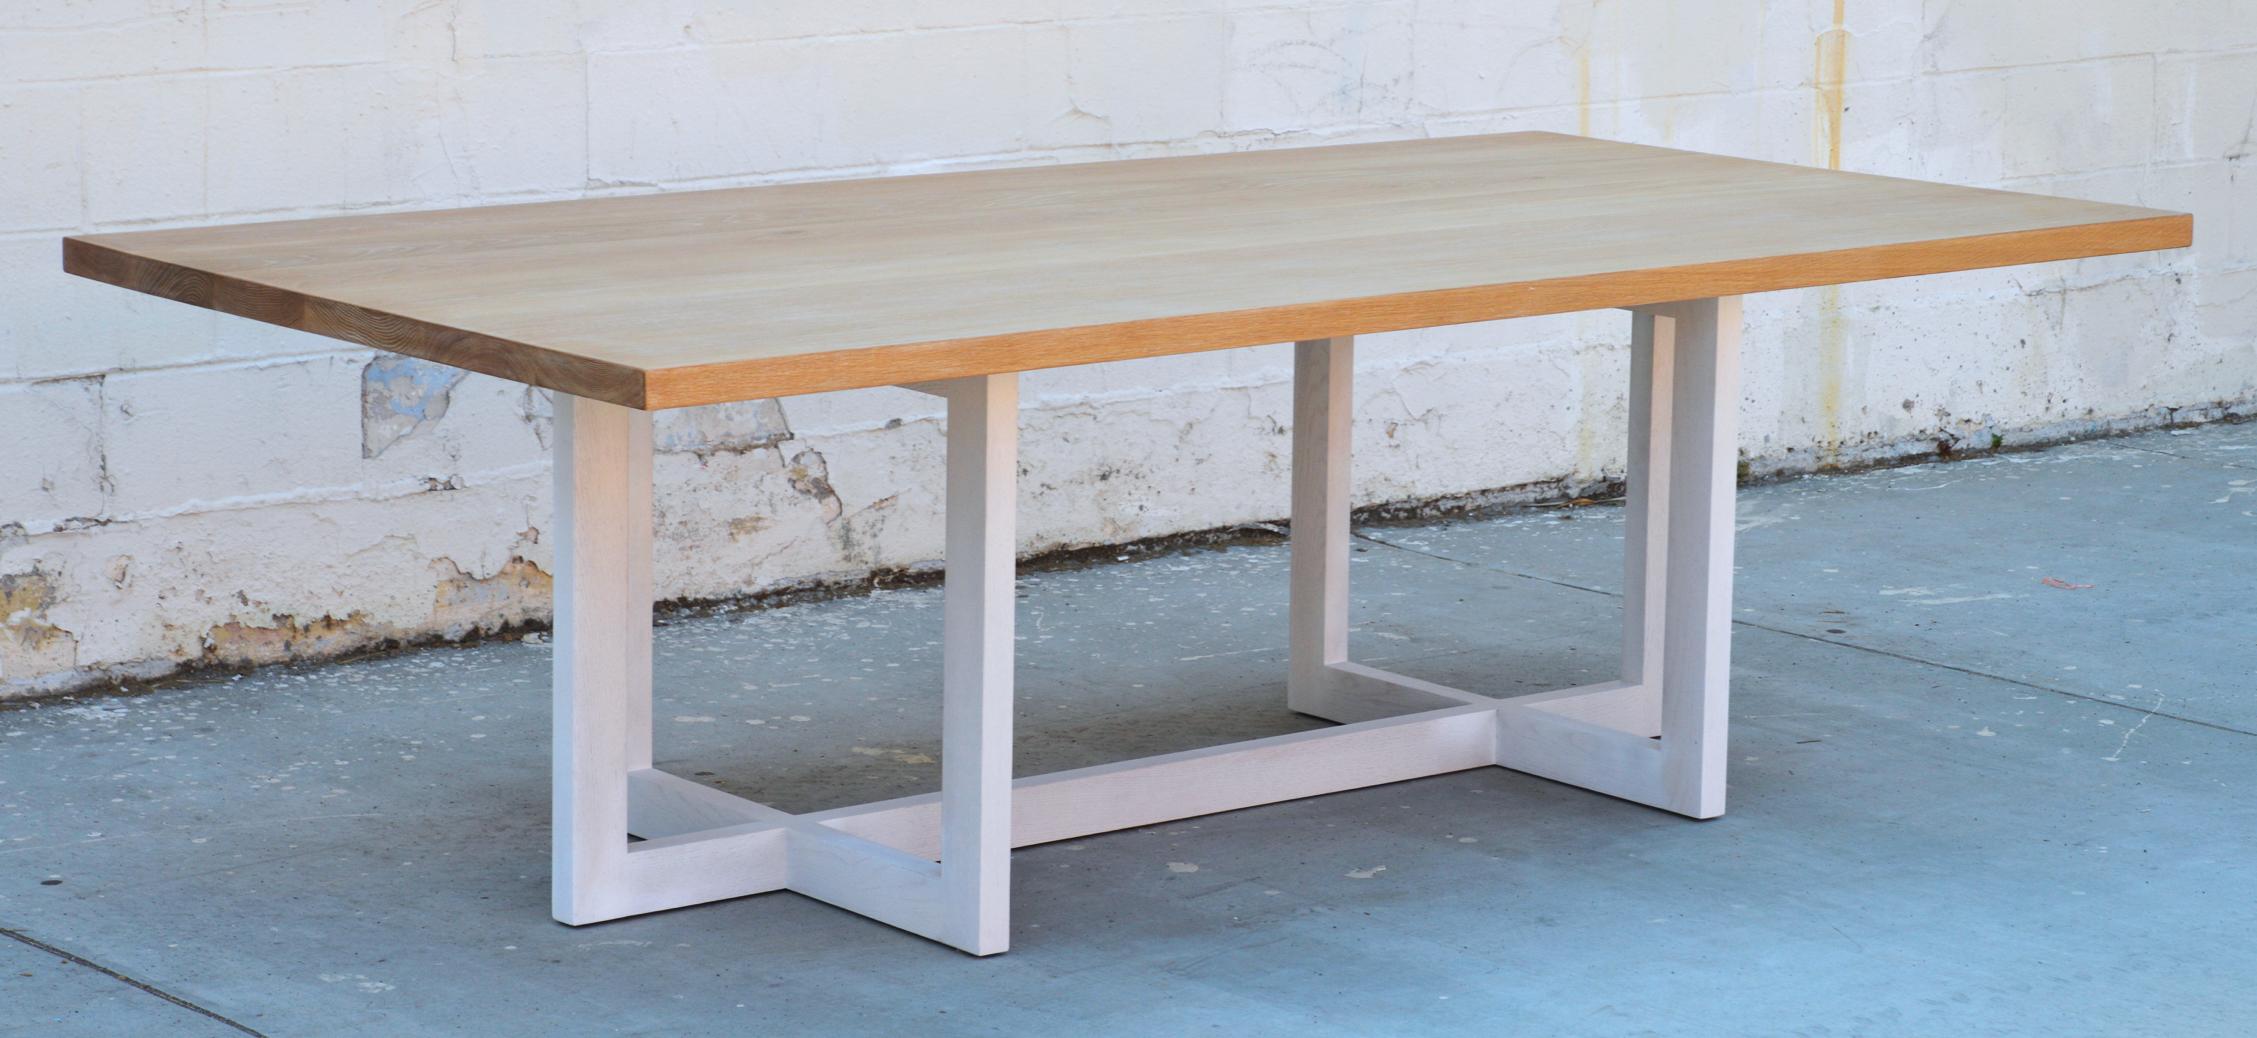 rift sawn white oak table